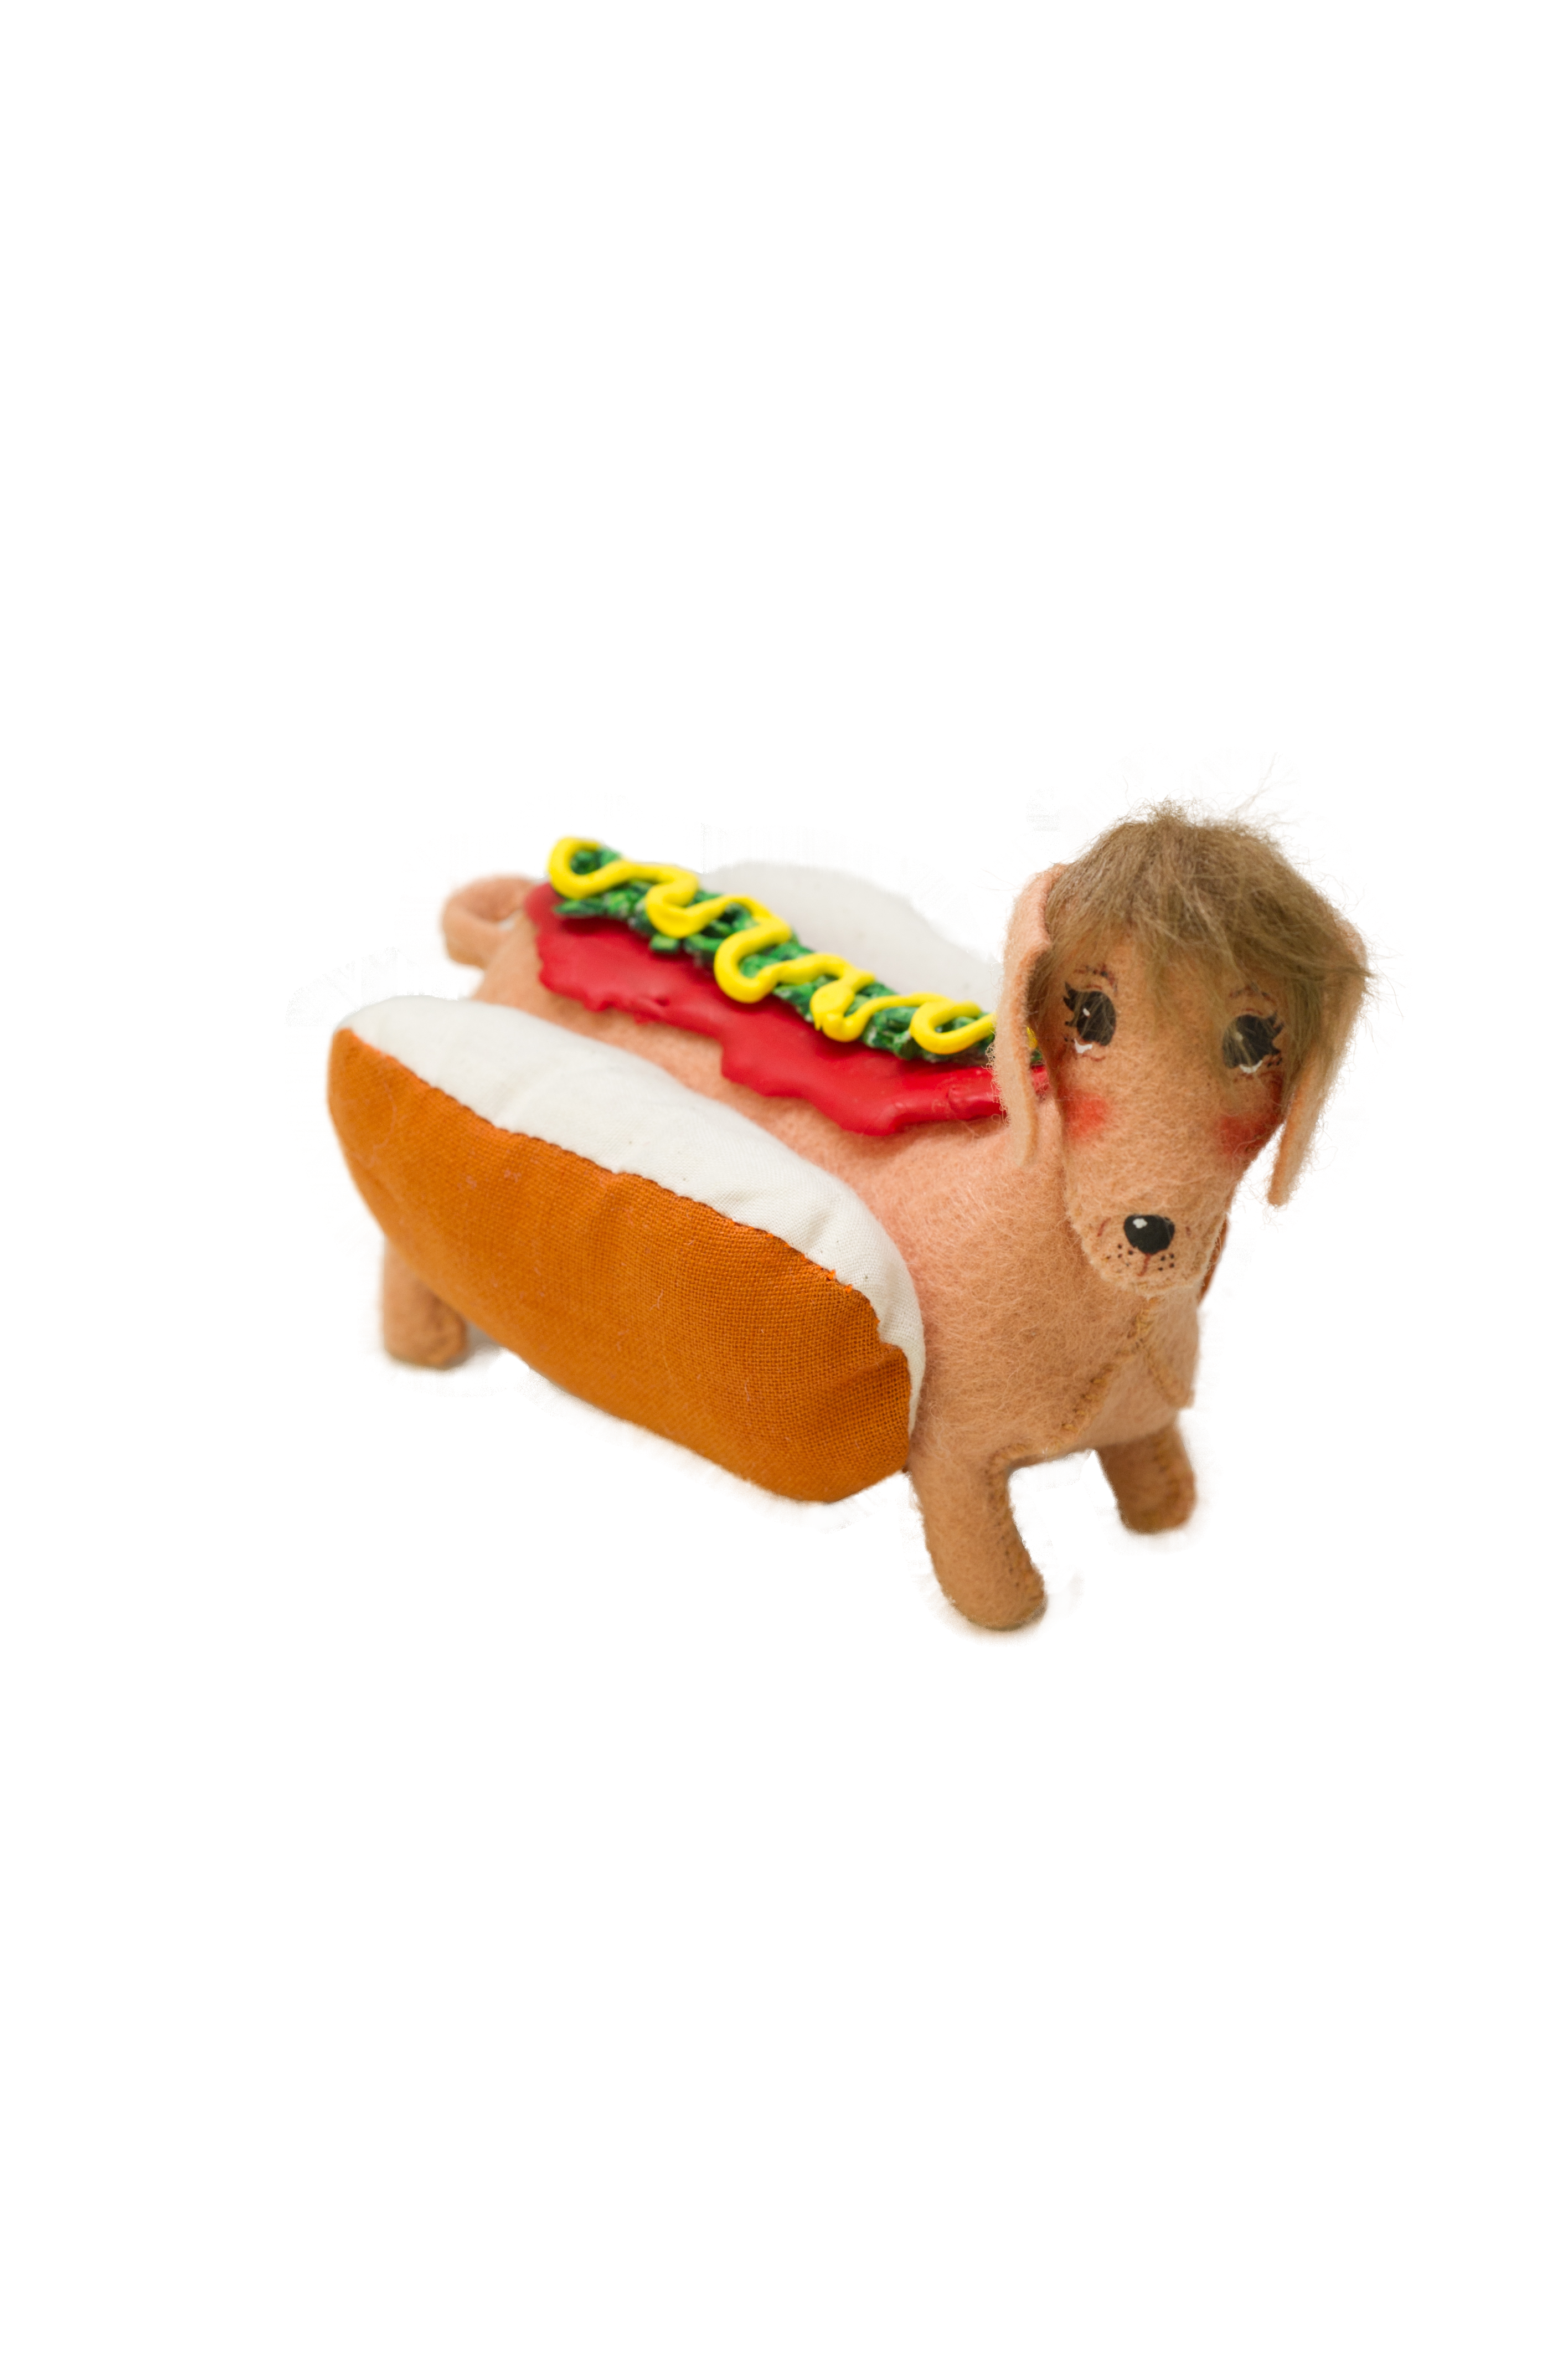 5" Hot Dog